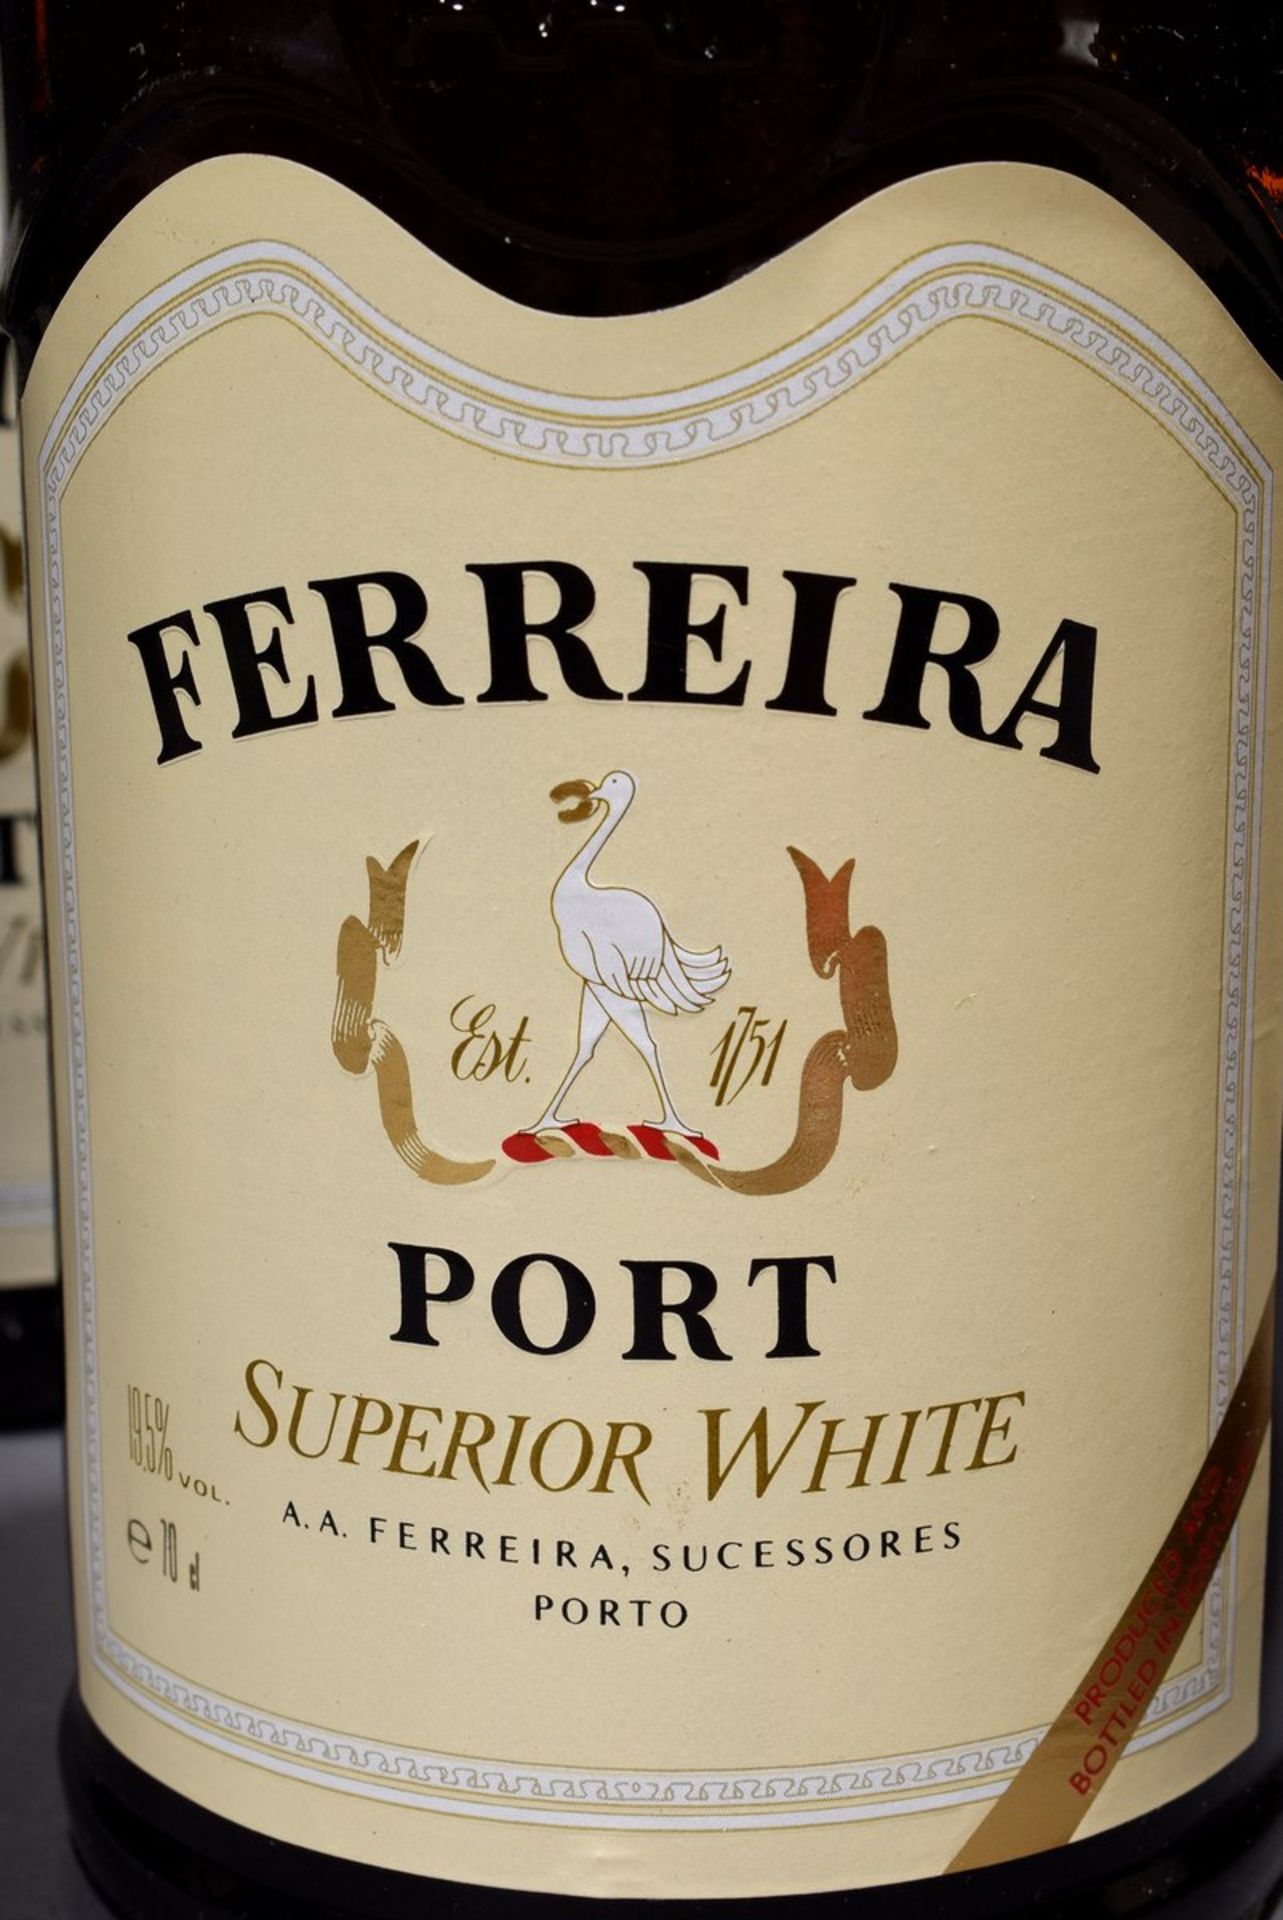 8 Flaschen Portwein "Ferreira Port Superior White", Portugal, kein Jg., 20. Jh., enthält Sulfite8 - Bild 2 aus 5